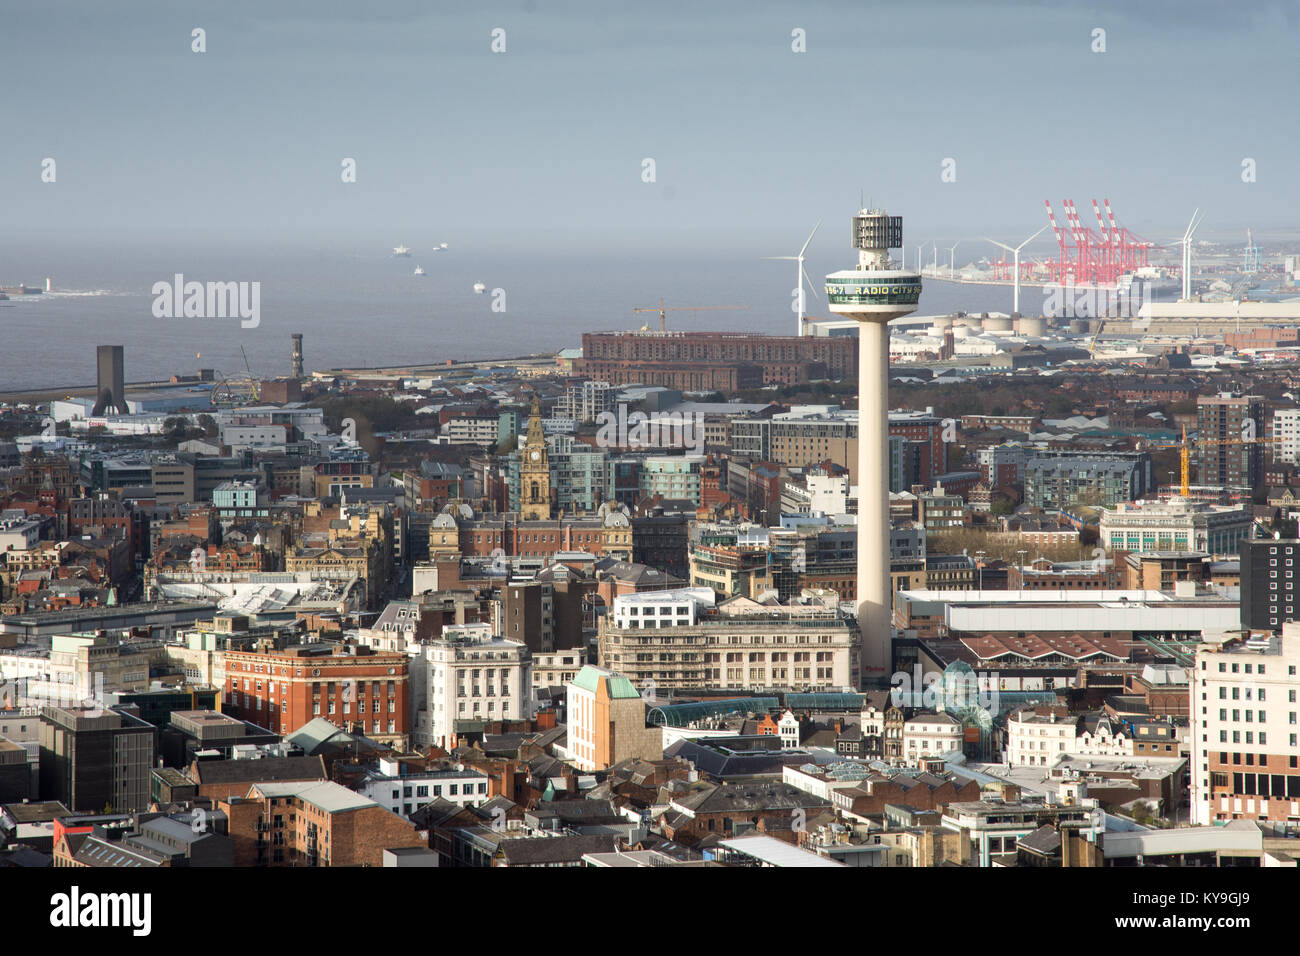 Liverpool, Angleterre, Royaume-Uni - 9 novembre, 2017 : le Radio City Tower s'élève au-dessus des rues du centre-ville de Liverpool. Banque D'Images